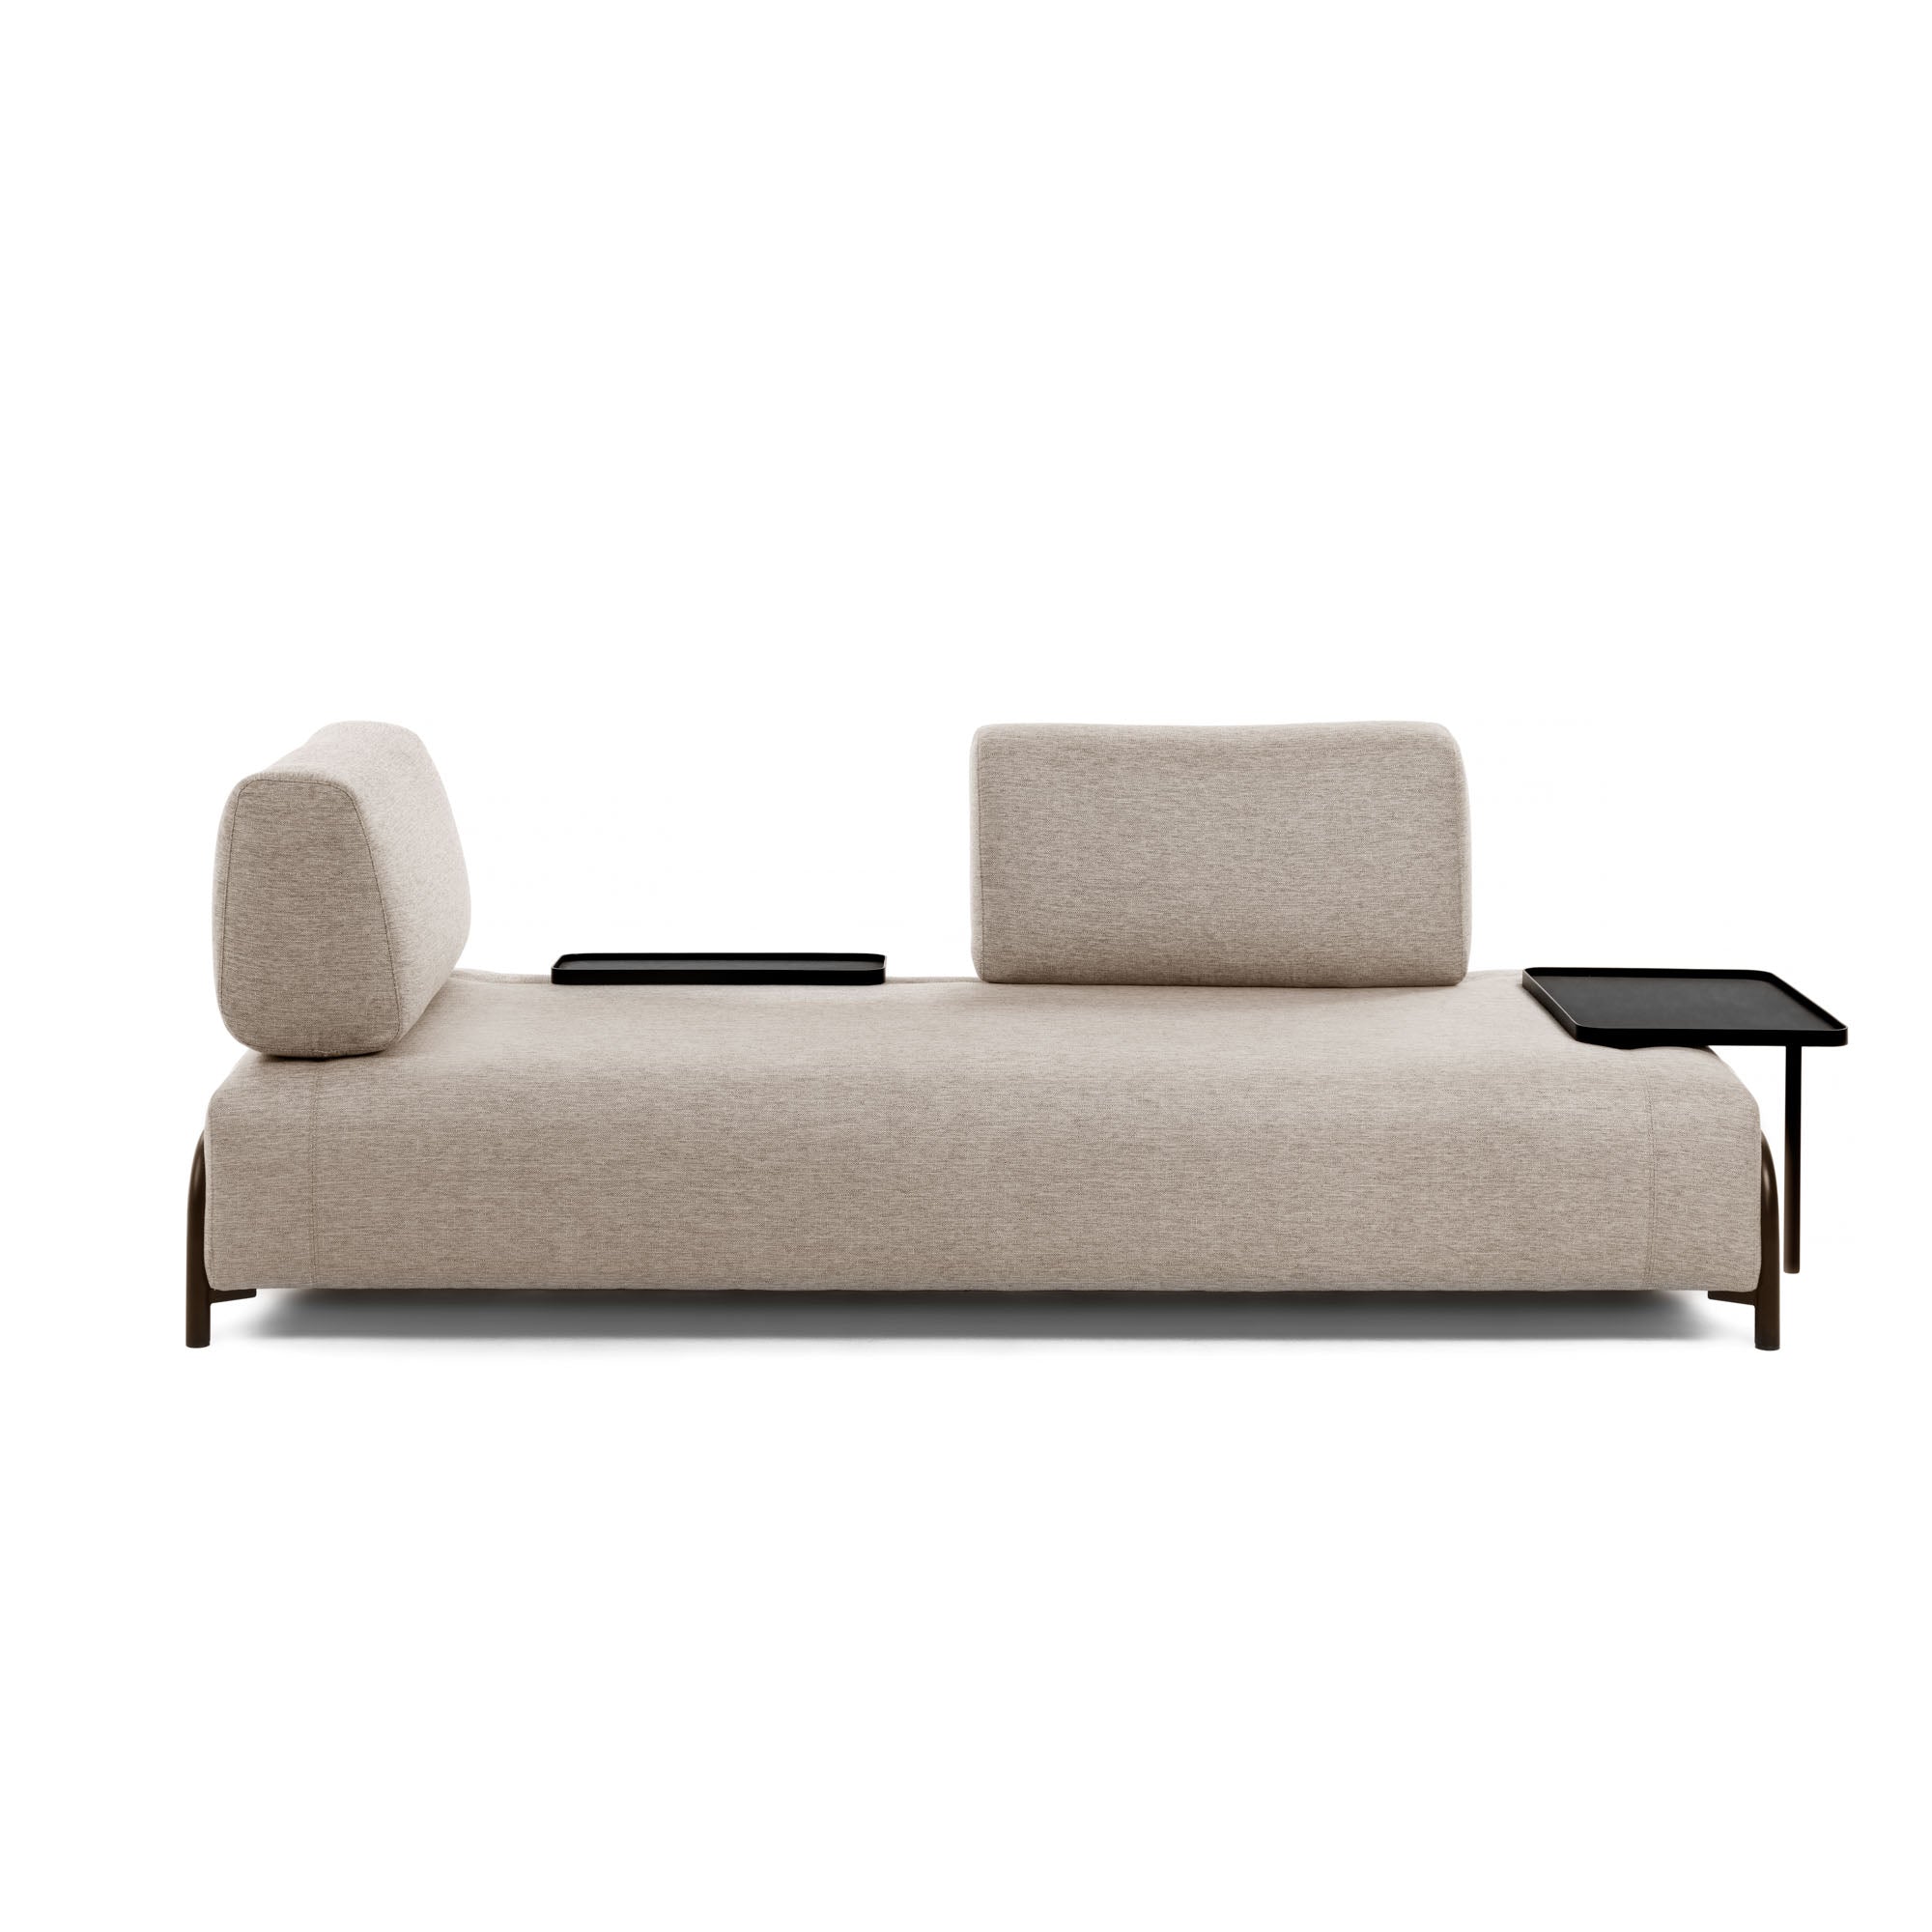 Compo 3 személyes kanapé kis tálcával, bézs színben, 232 cm